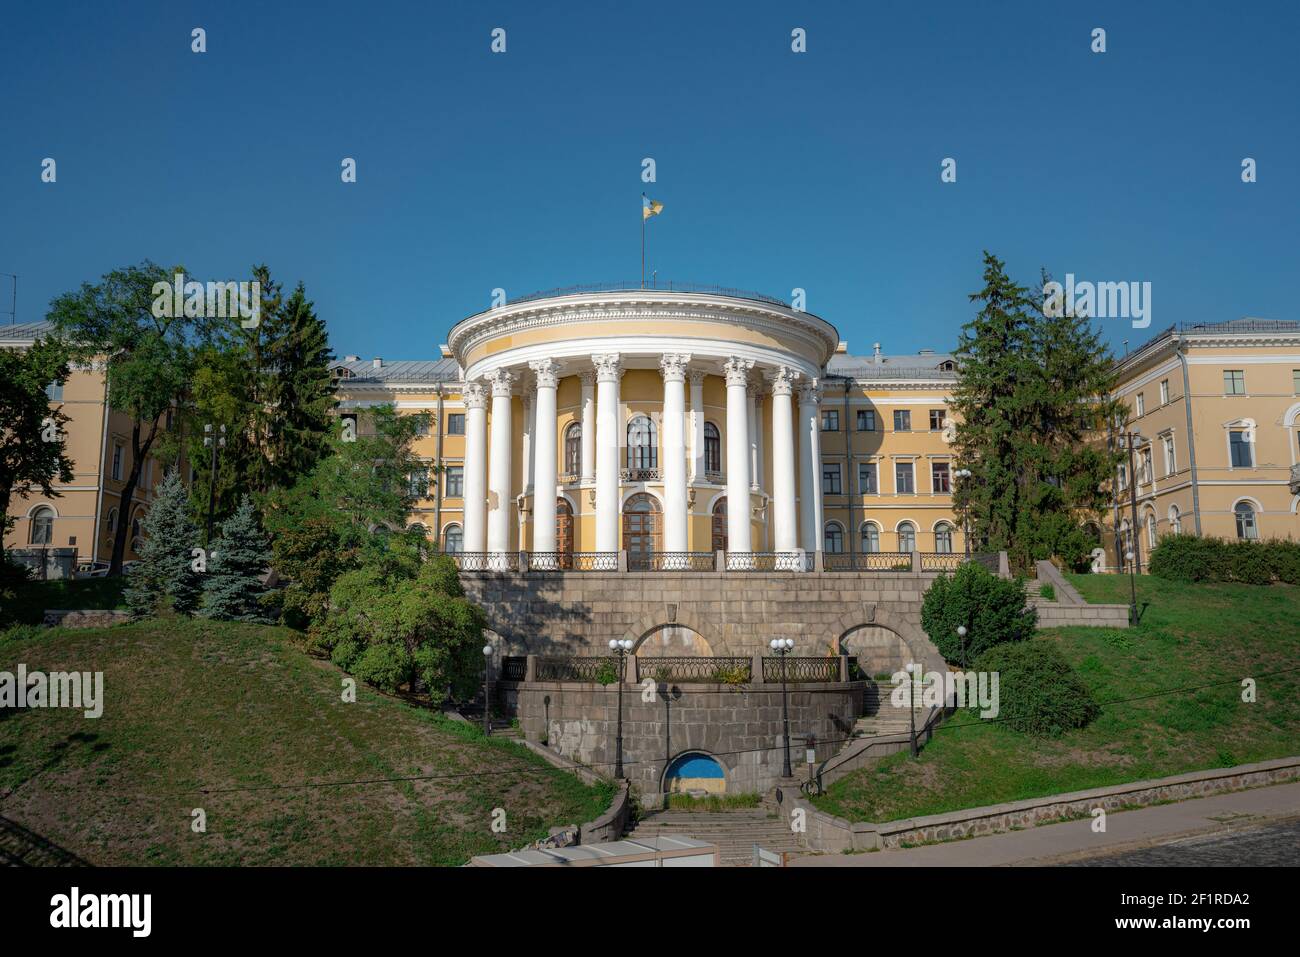 Palais d'octobre - Centre international de la culture et des arts - Kiev, Ukraine Banque D'Images